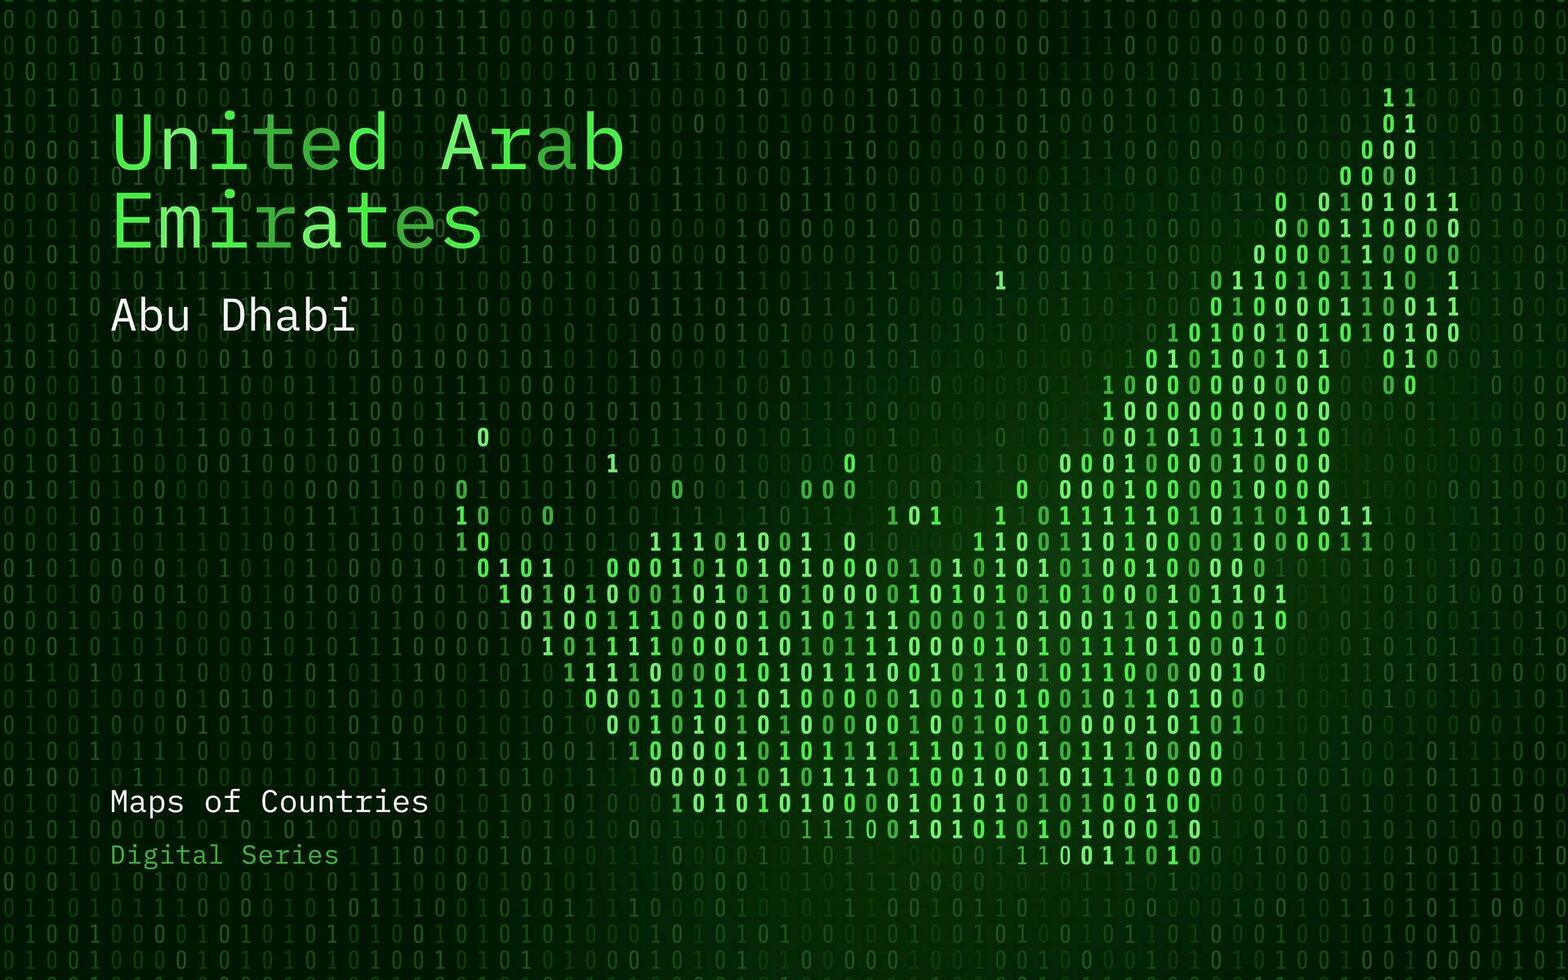 förenad arab emirates grön Karta visad i binär koda mönster. tsmc. matris tal, noll, ett. värld länder vektor Kartor. digital serier